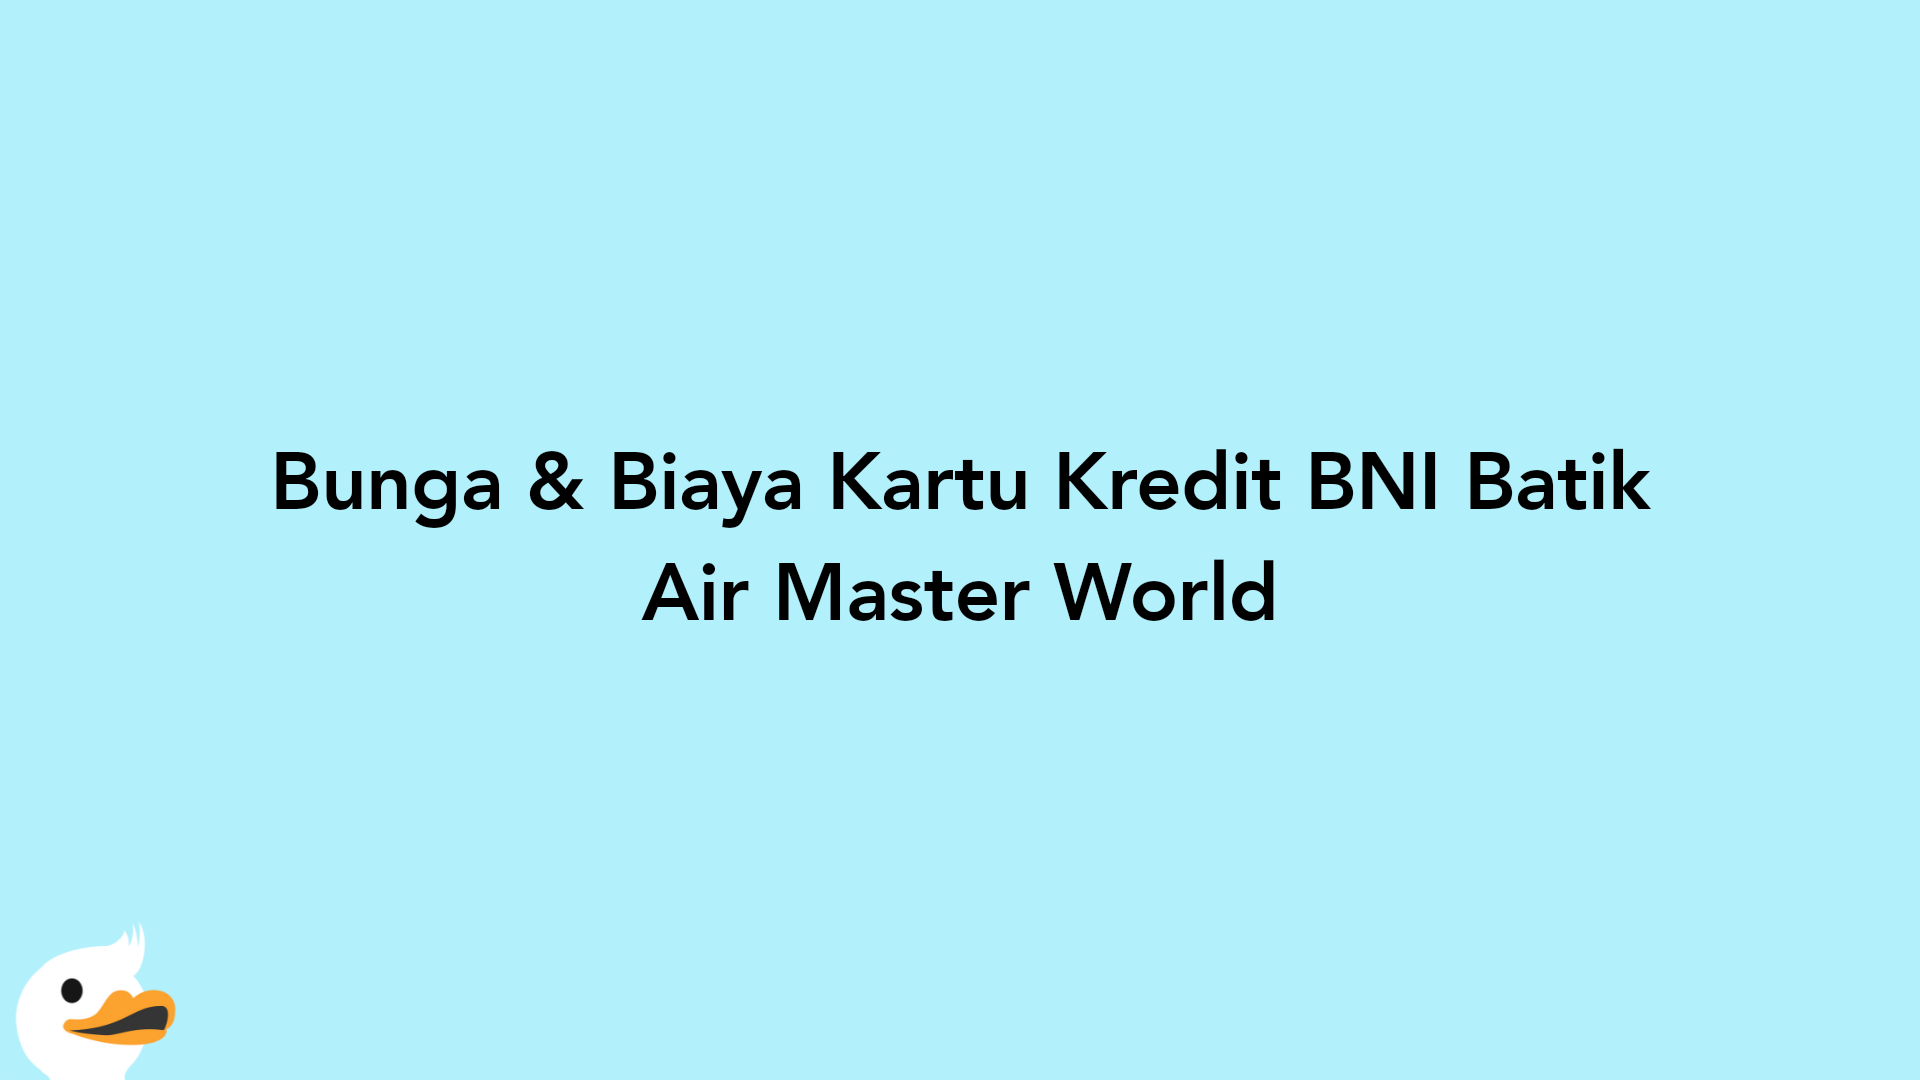 Bunga & Biaya Kartu Kredit BNI Batik Air Master World